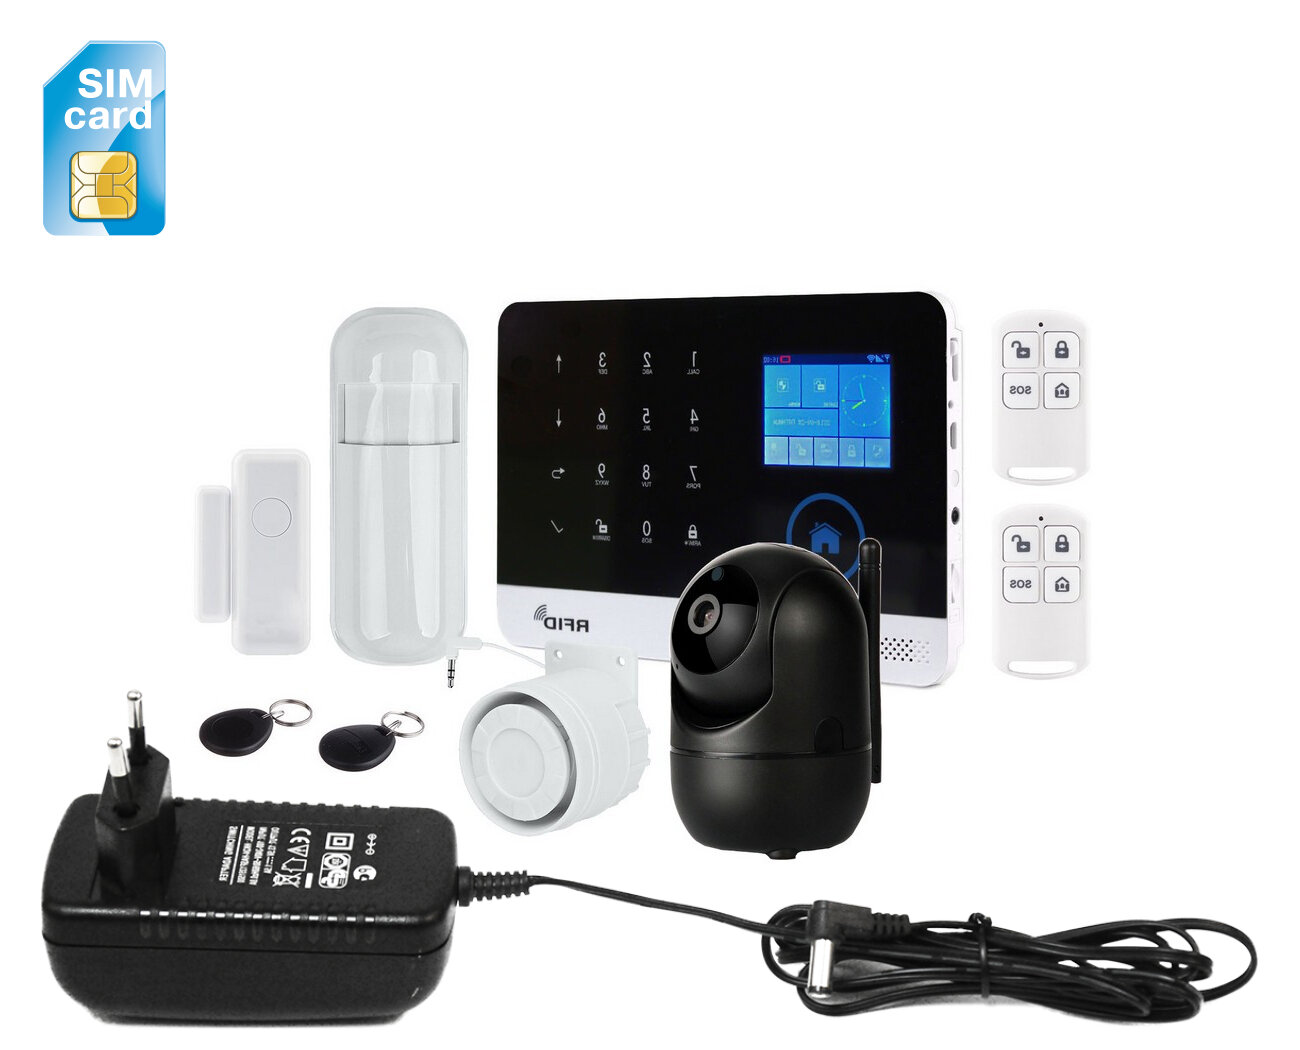 GSM Wi-Fi сигнализация для дачи с видеокамерой - HDком 288Bl(ASW5) и Страж Око+ (U59828OK) для загородного дома гаража квартиры